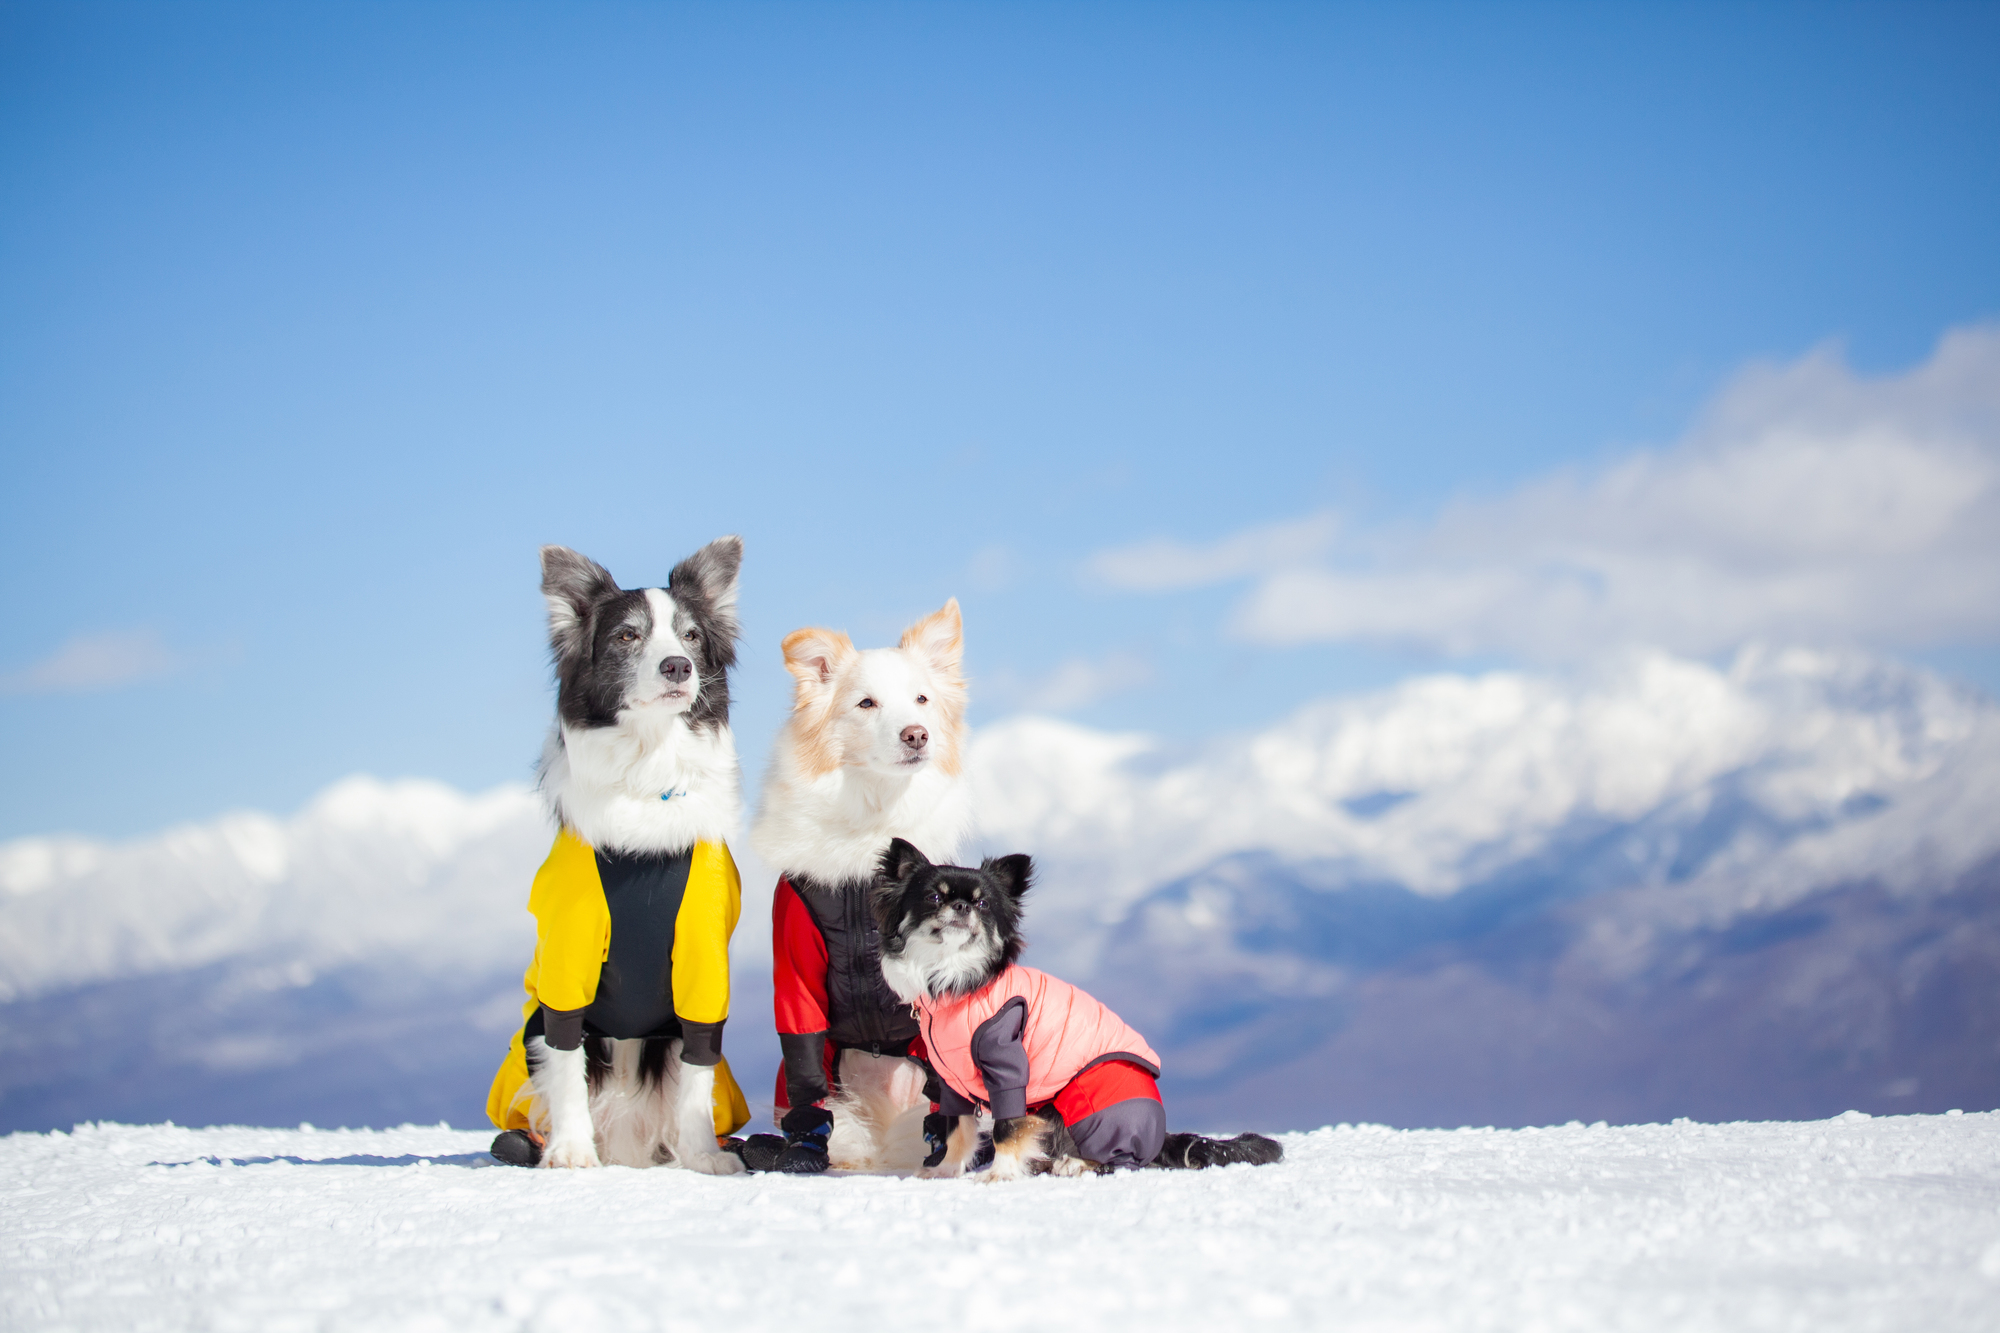 22年冬 愛犬と一緒に雪遊び わんちゃんokのスノーシュー スノードッグラン スキー場特集 愛犬との旅行ならイヌトミィ